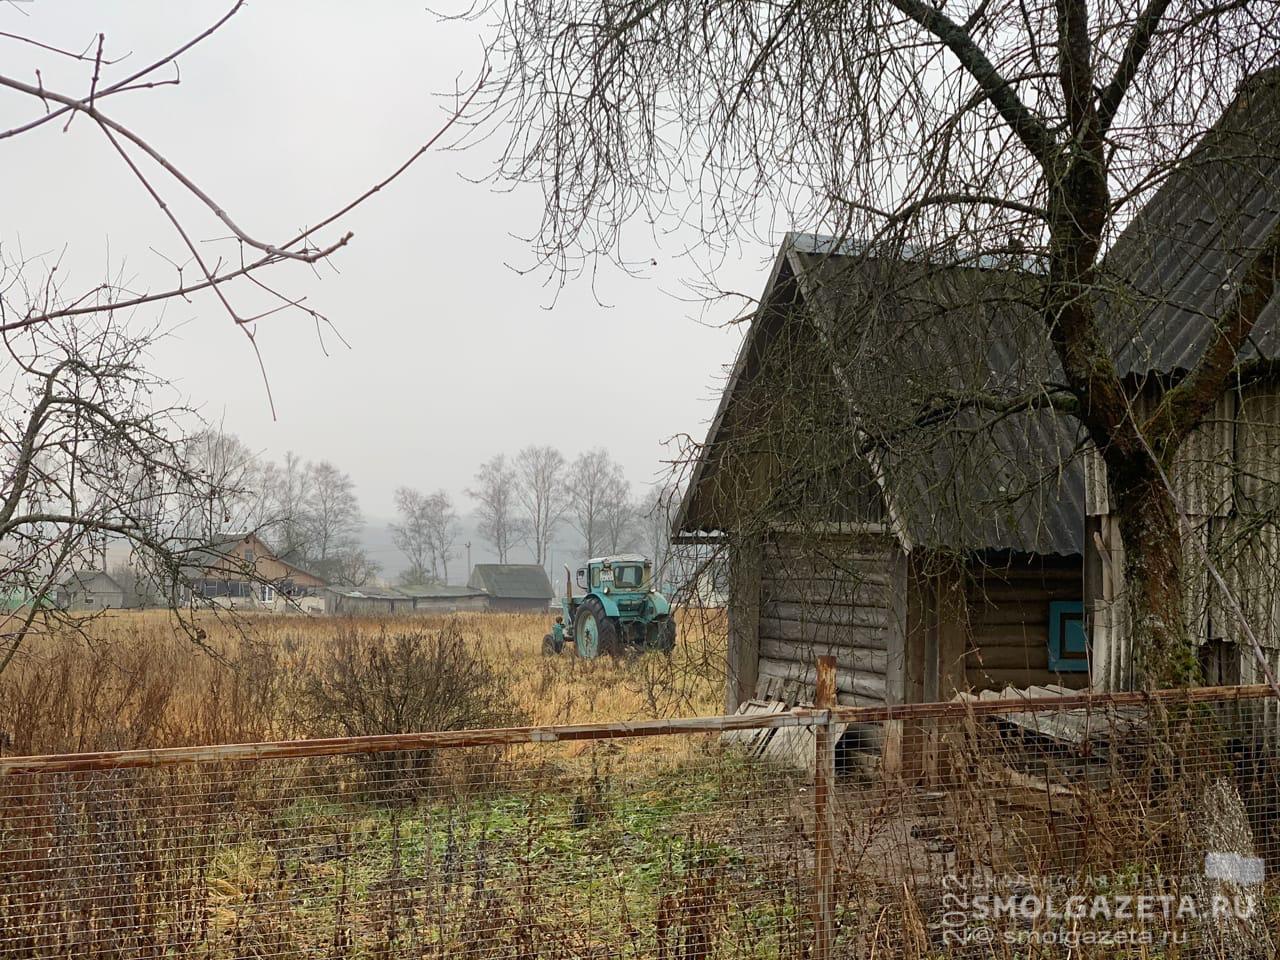 4854 сельских населенных пункта насчитывается в Смоленской области